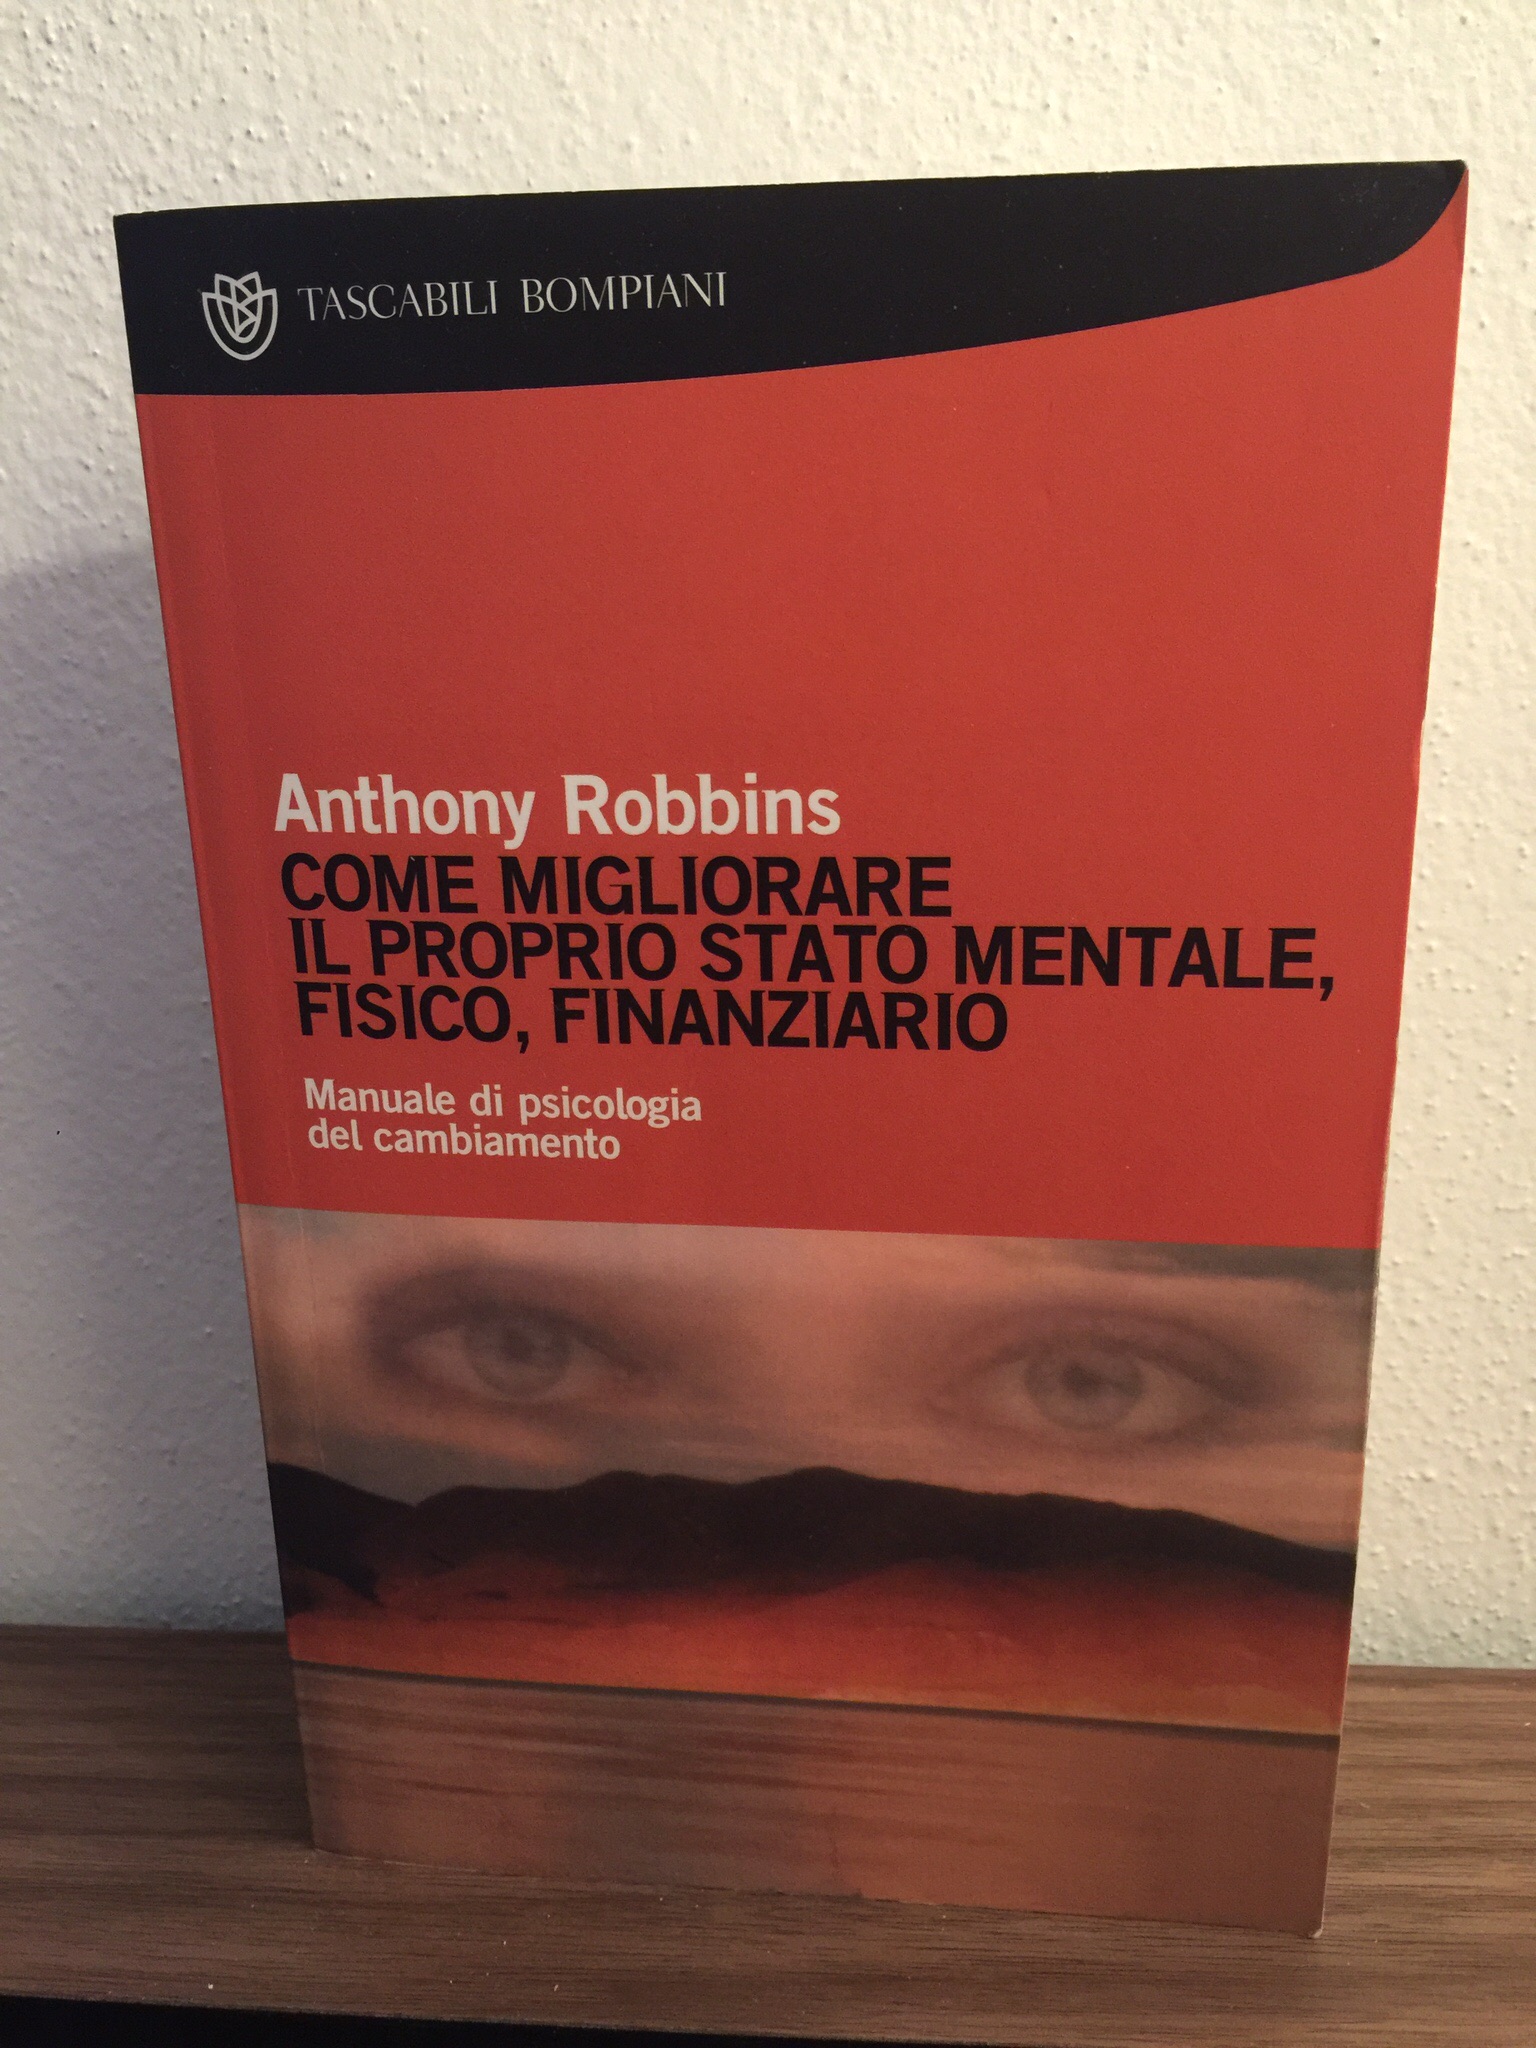 Anthony Robbins – Come migliorare il proprio stato mentale, fisico, finanziario